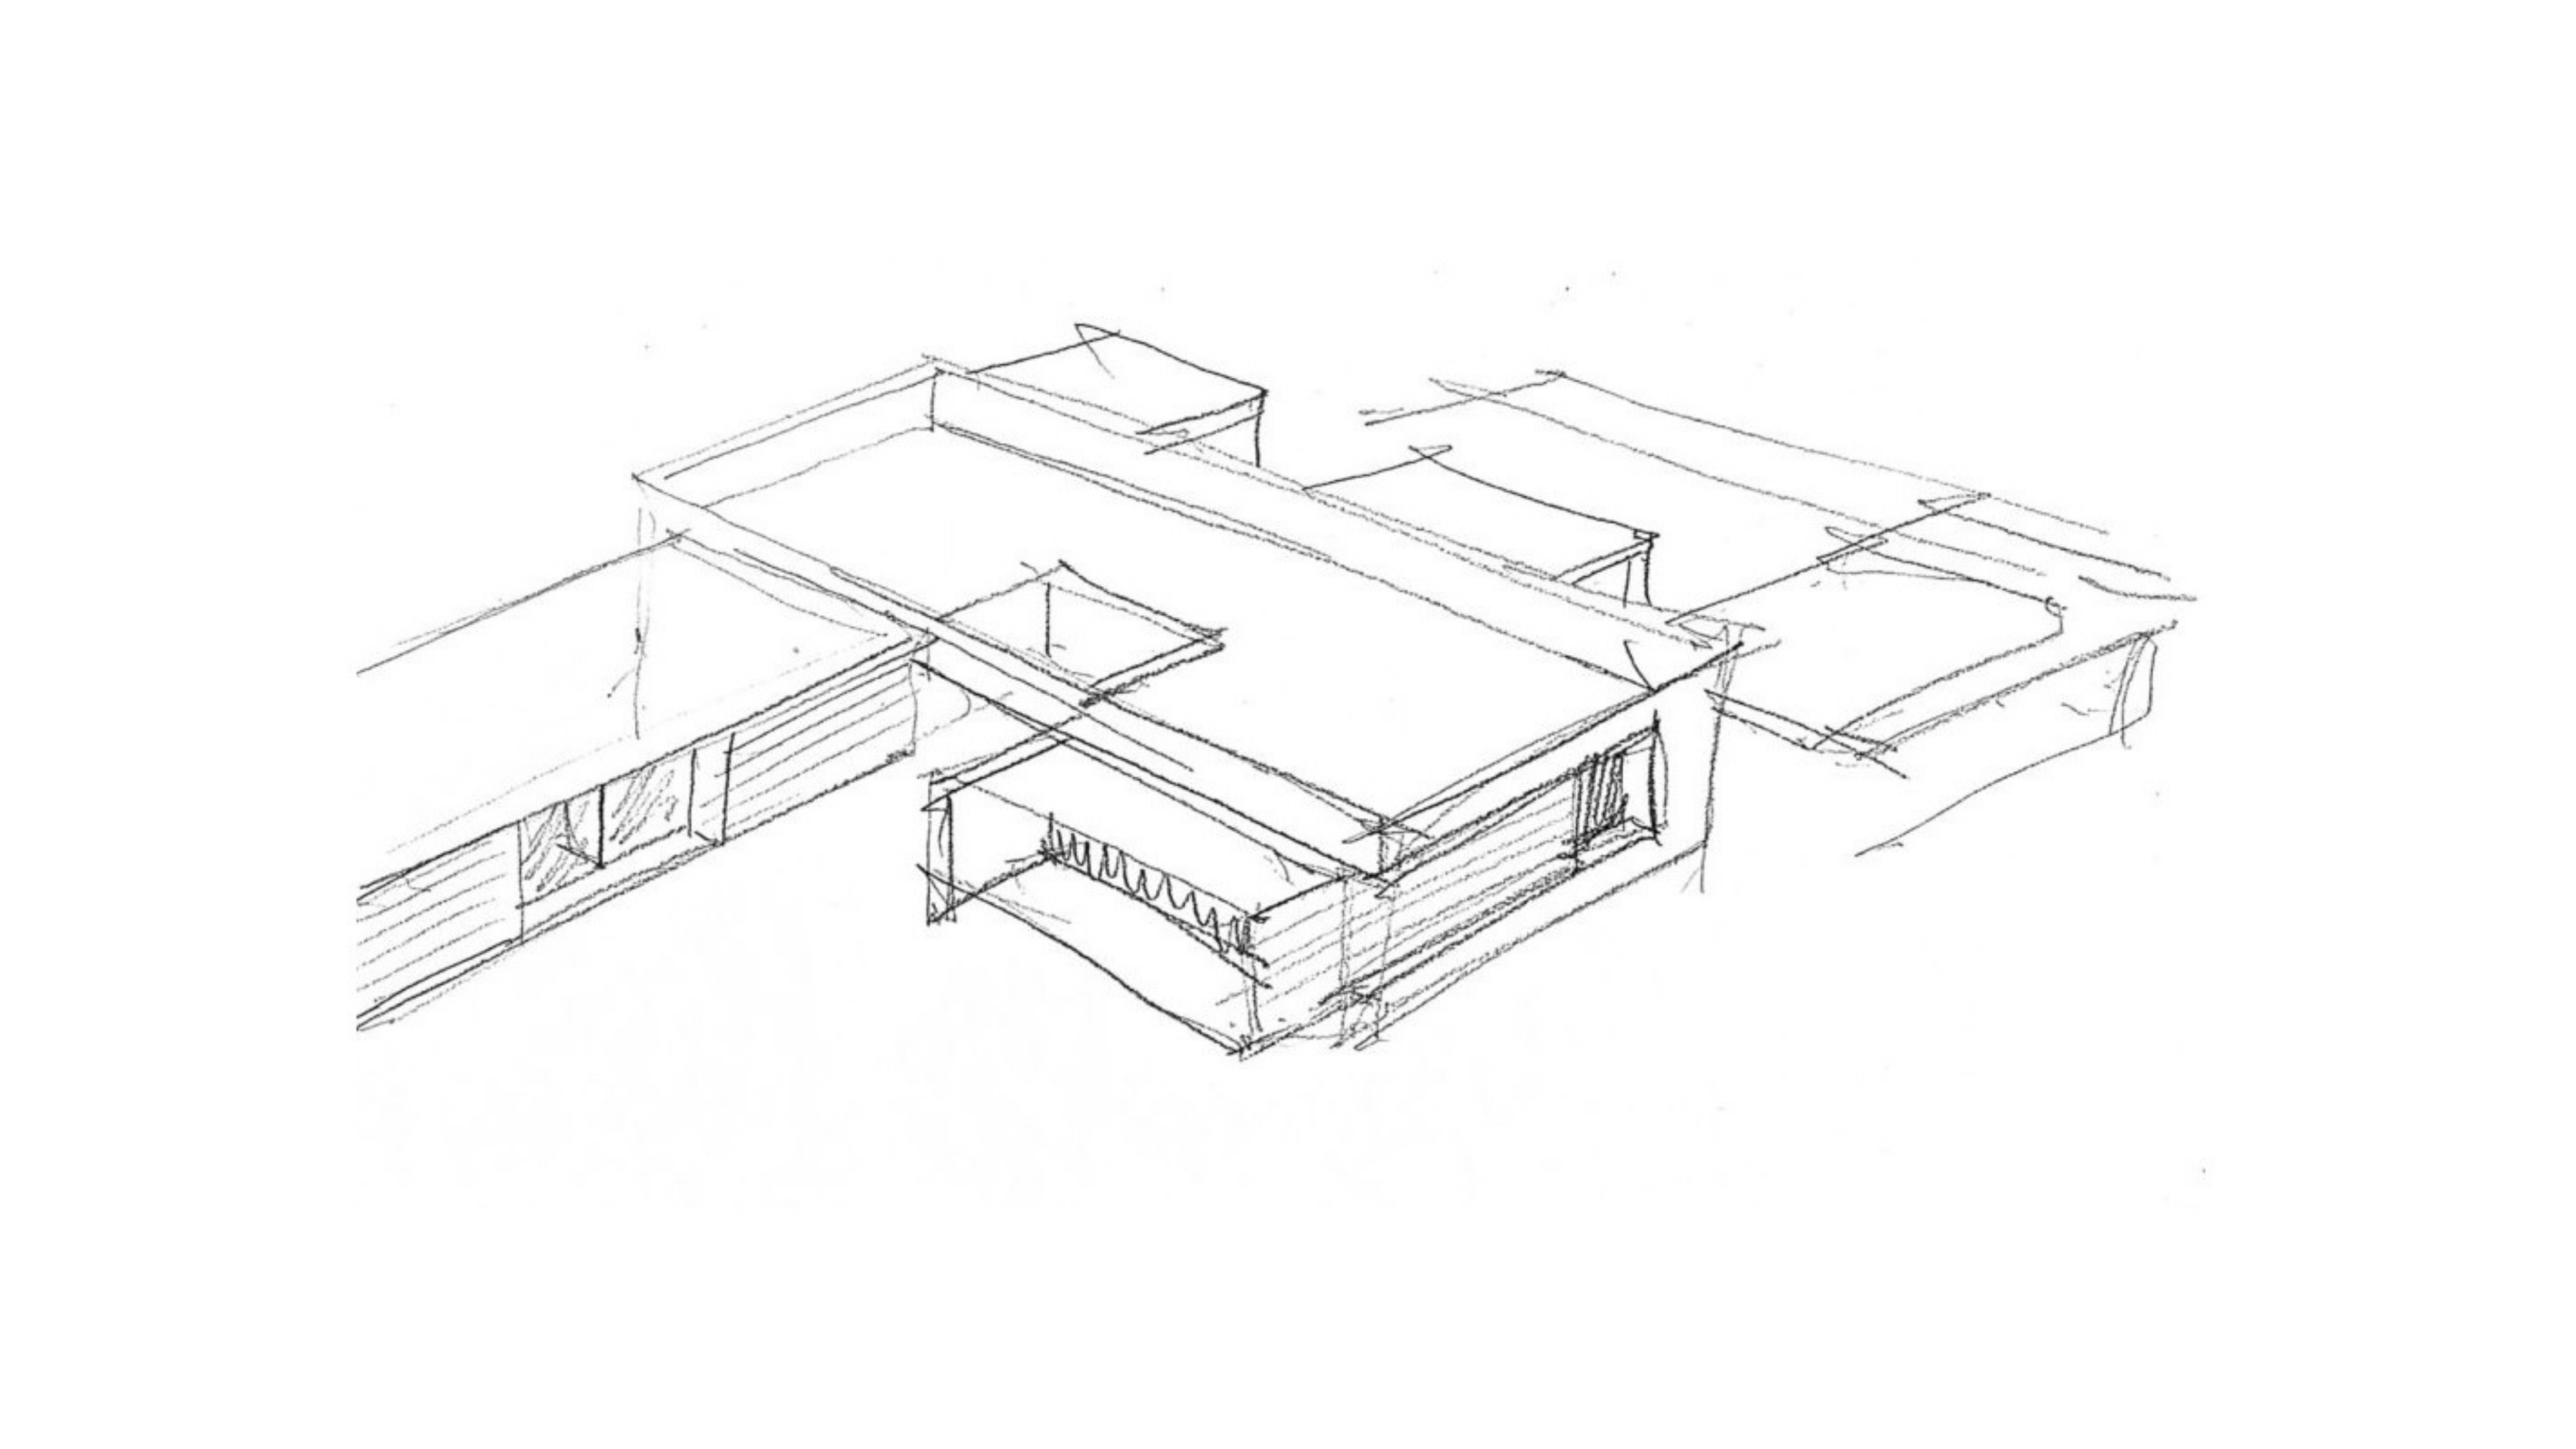 QHOMES9 es un proyecto del estudio de arquitectura FH2L Arquitectos. Conformado por 9 viviendas unifamiliares.